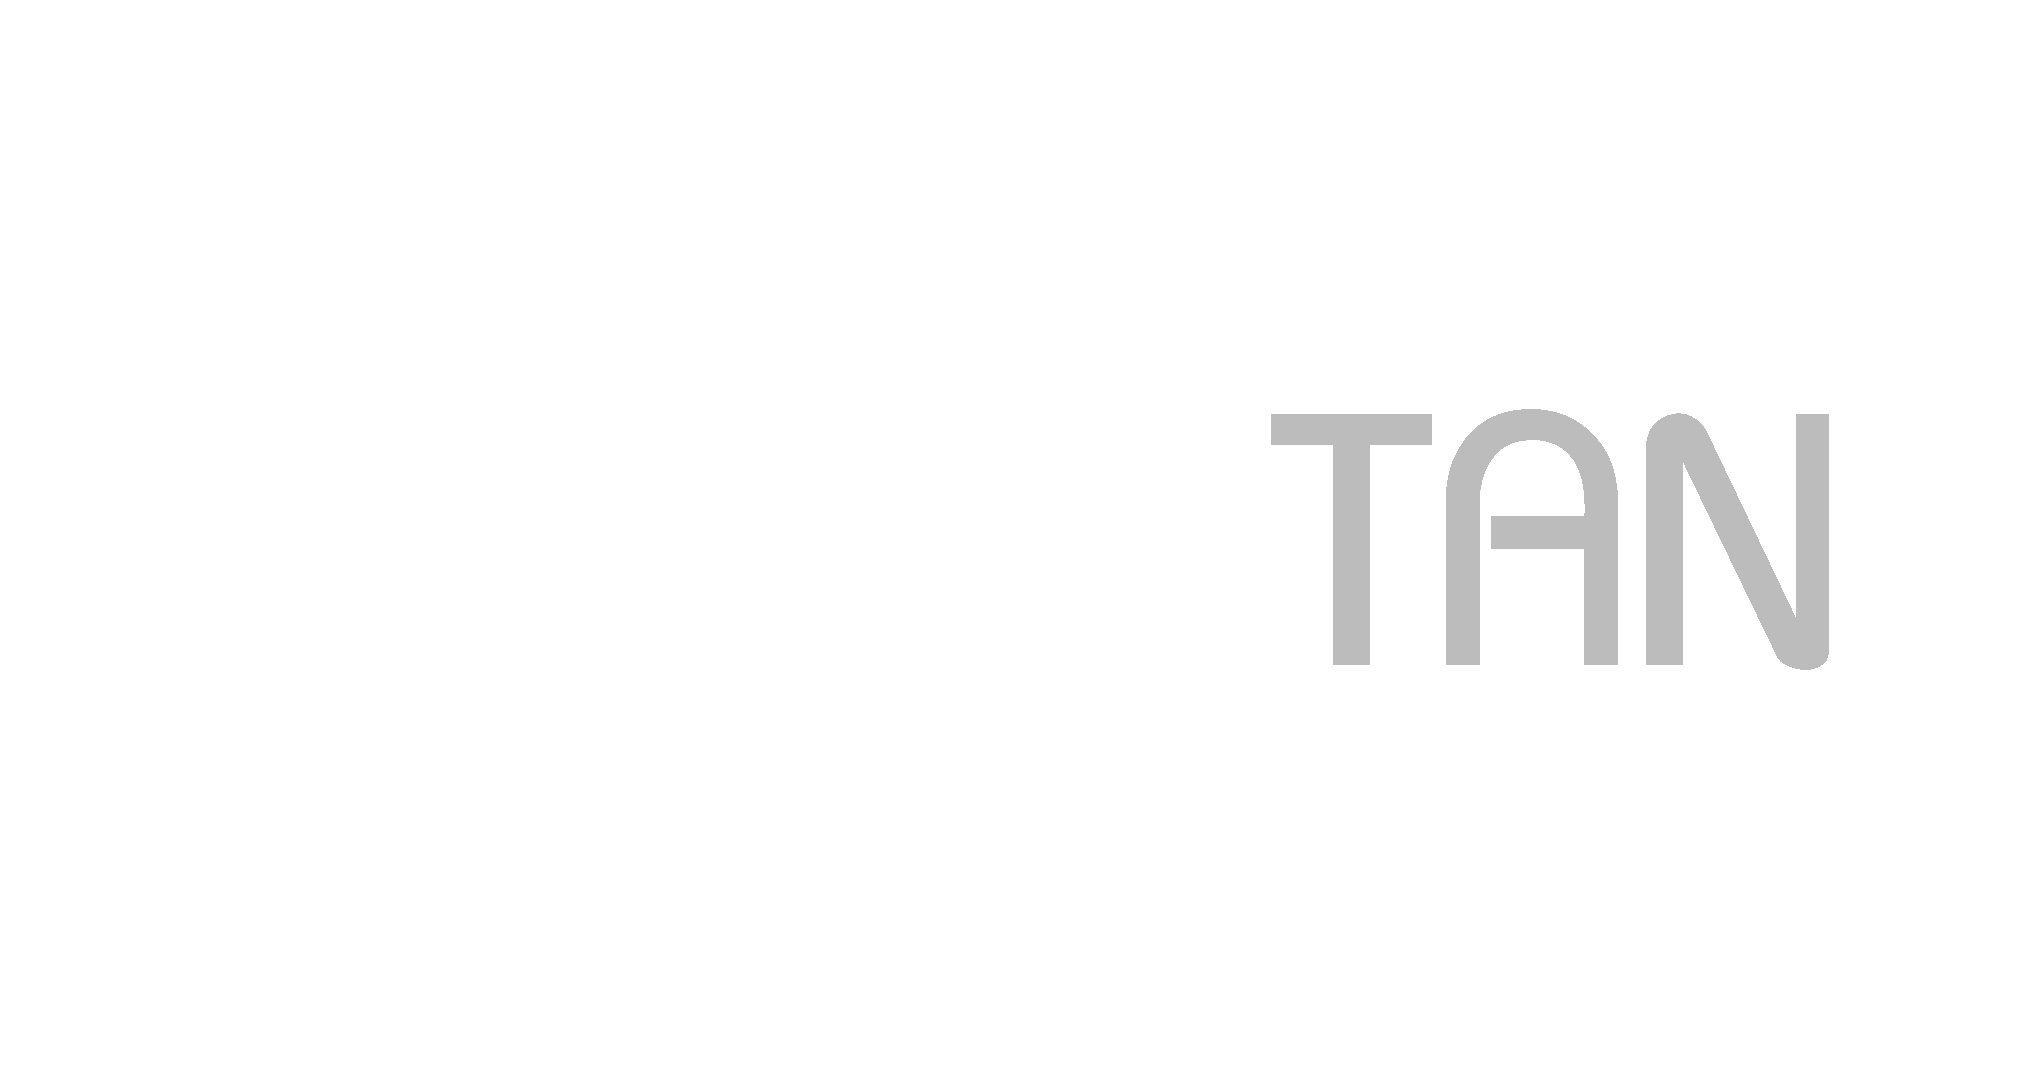 Benny Tan